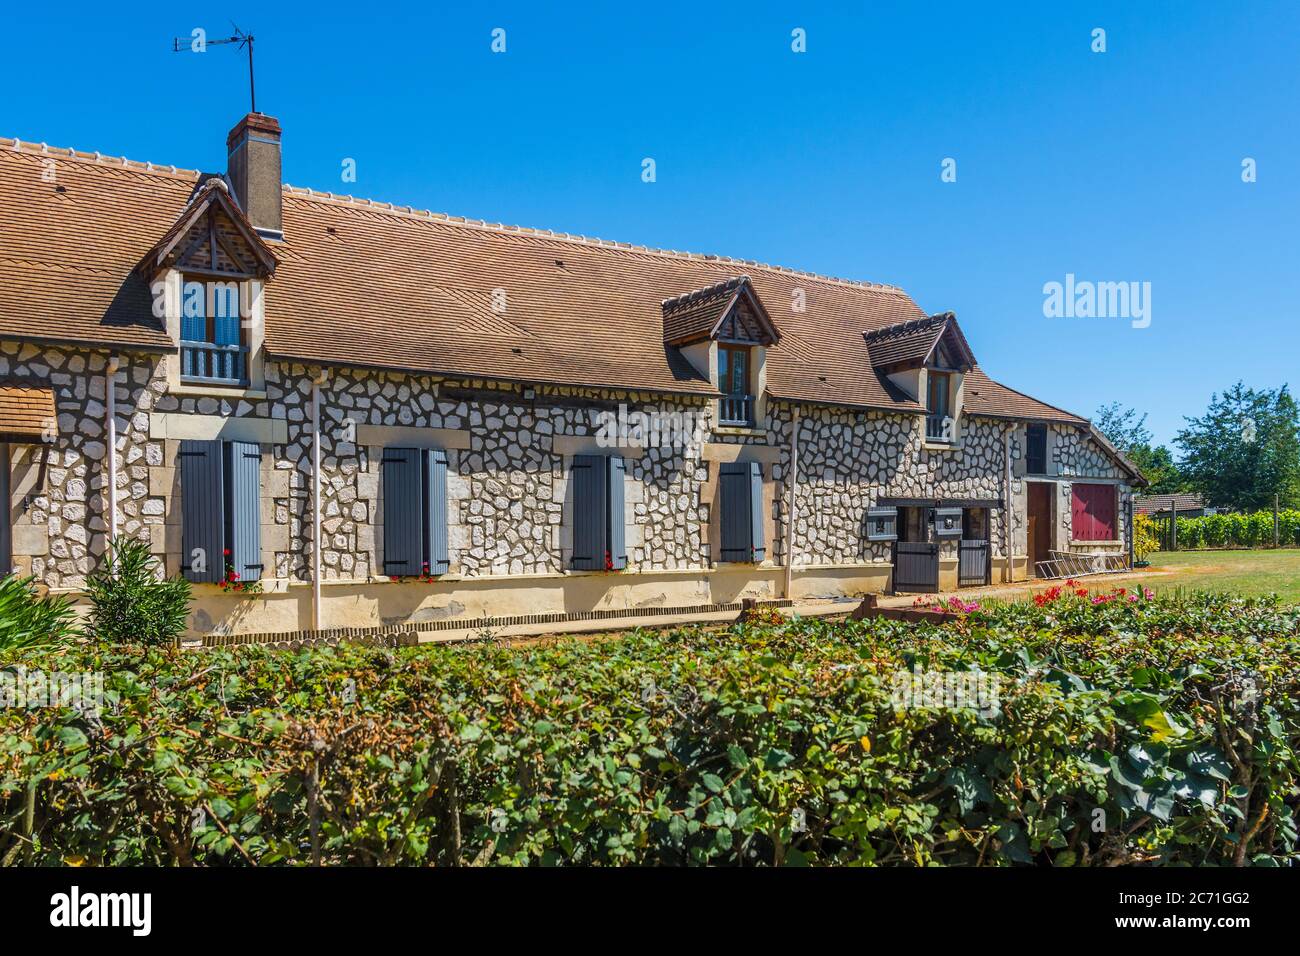 Maison de campagne rénovée avec effet de pavage fou sur les murs - Nesmes, Indre (36), France. Banque D'Images